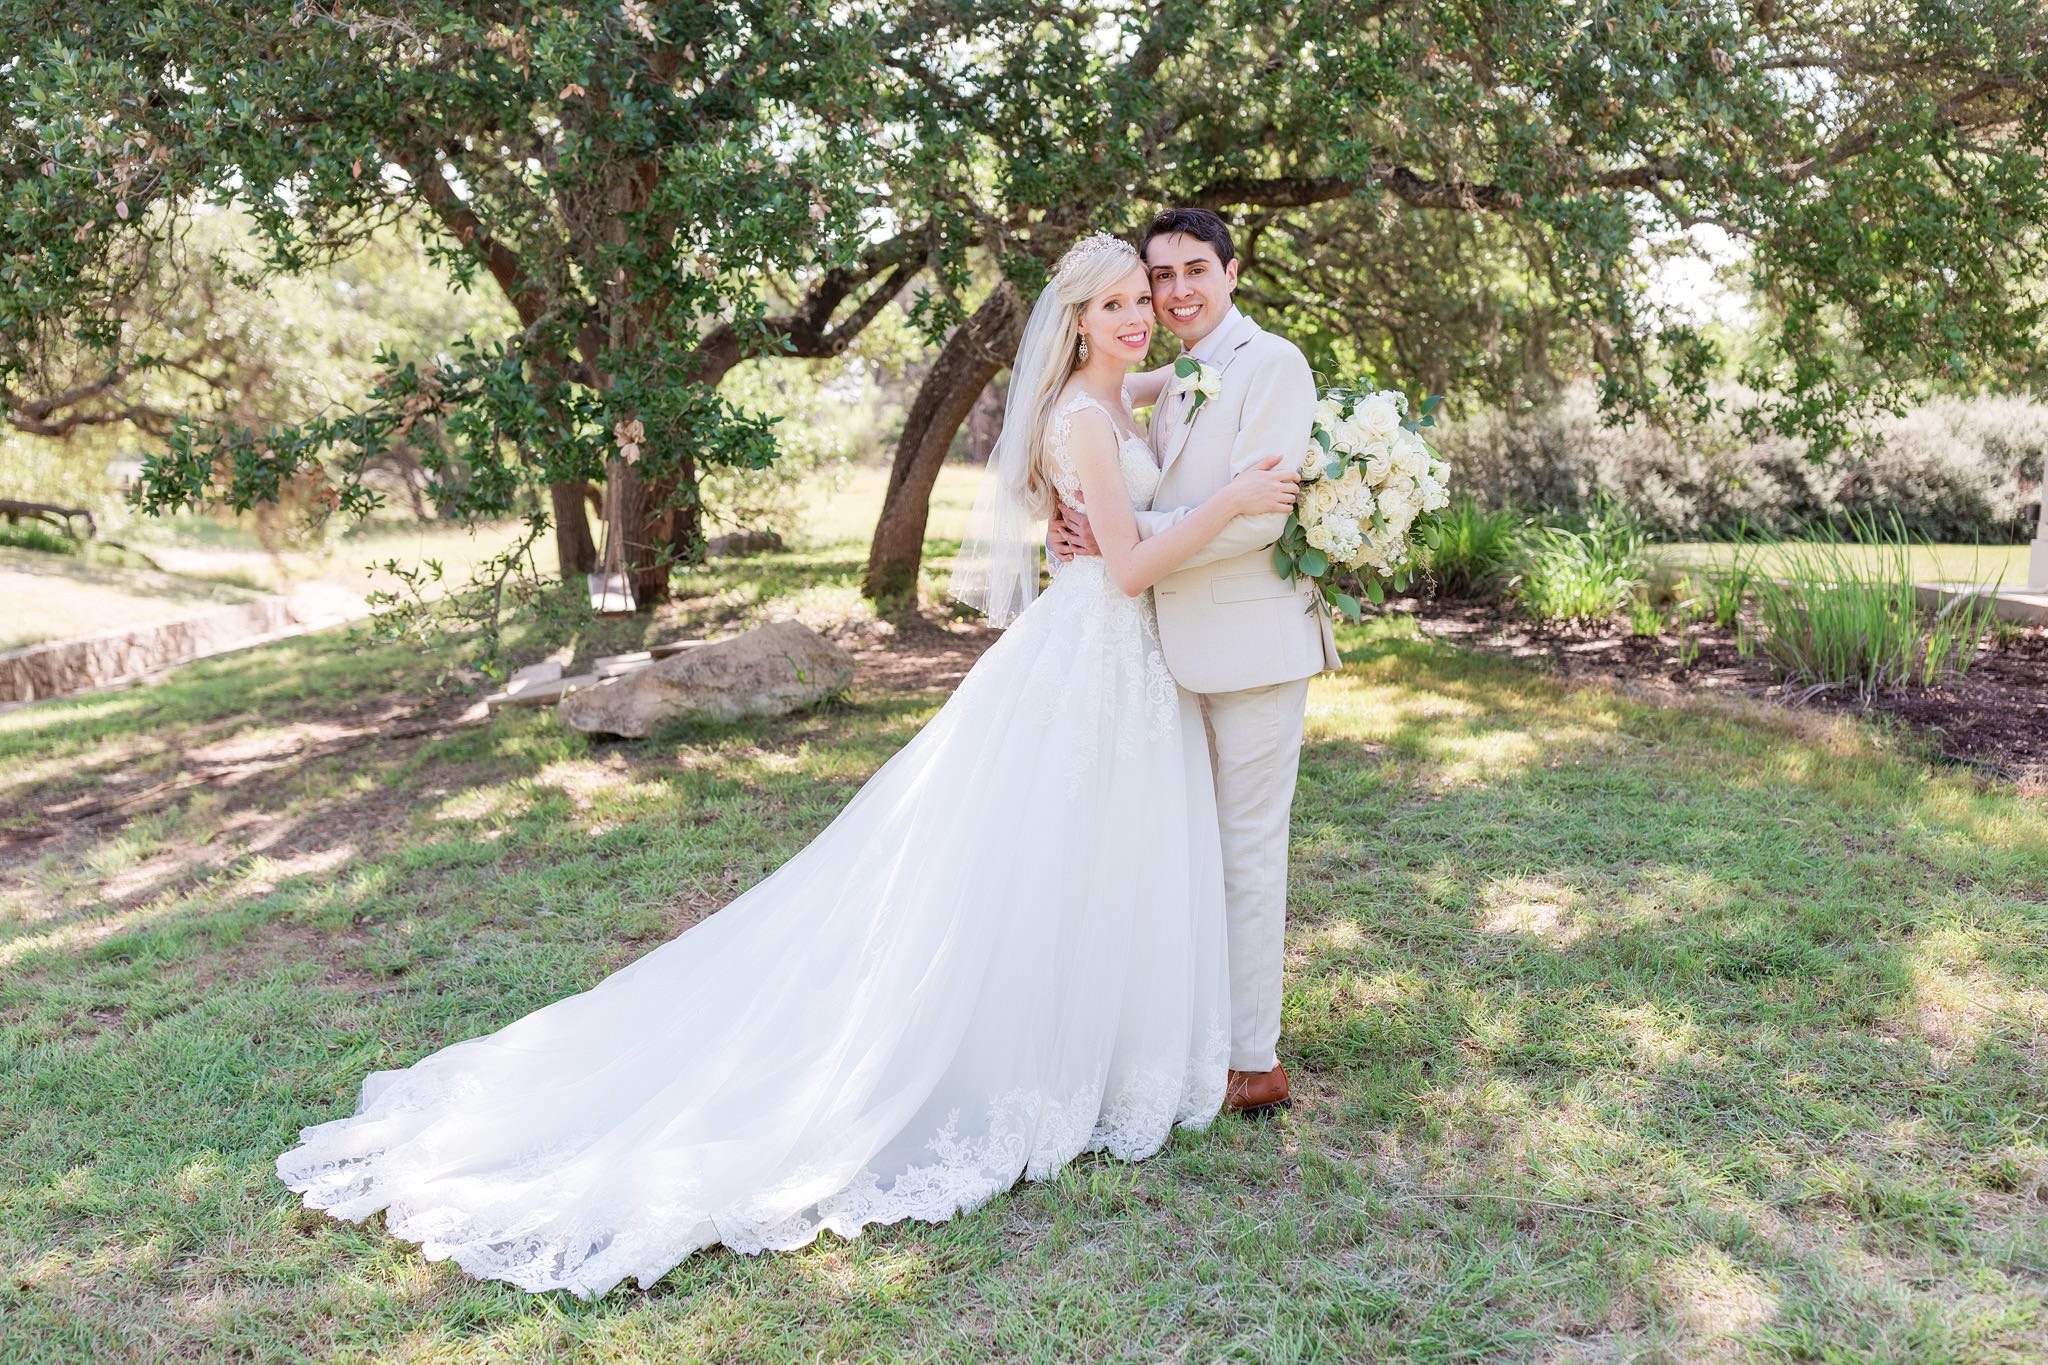 An Intimate Wedding at Kendall Point in Boerne, TX by Dawn Elizabeth Studios, San Antonio Wedding Photographer